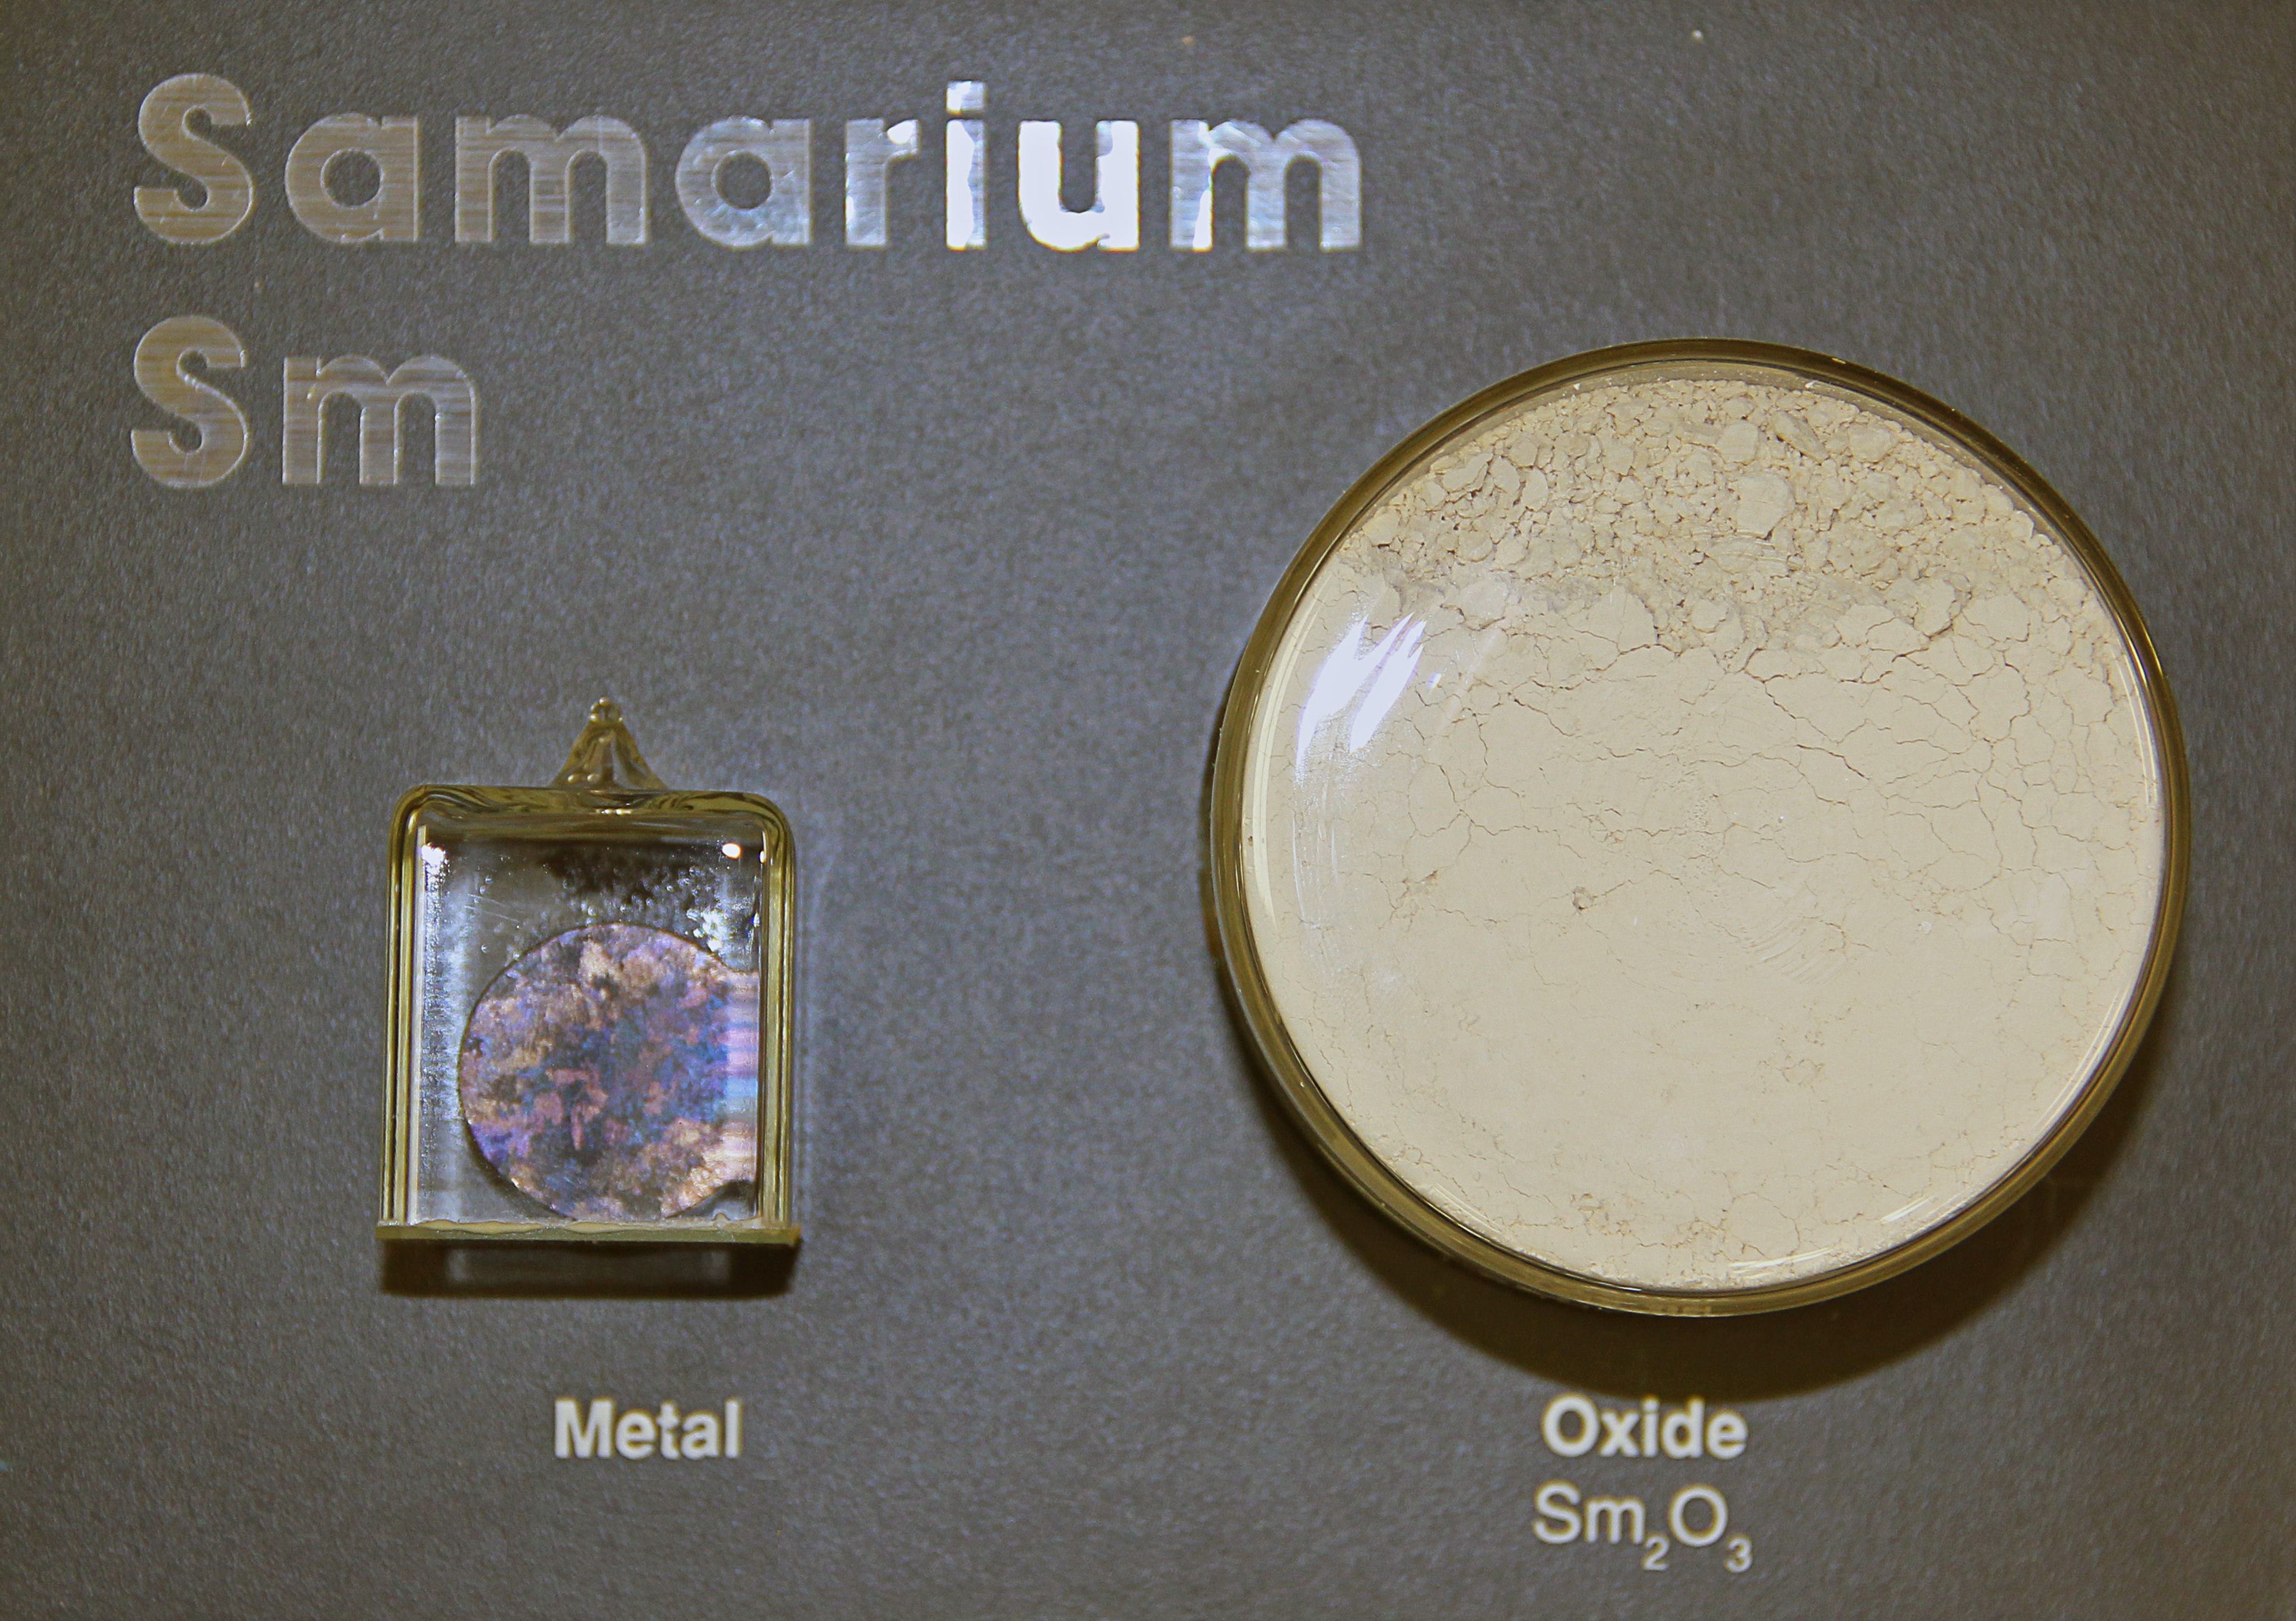 Samarium metal and oxide